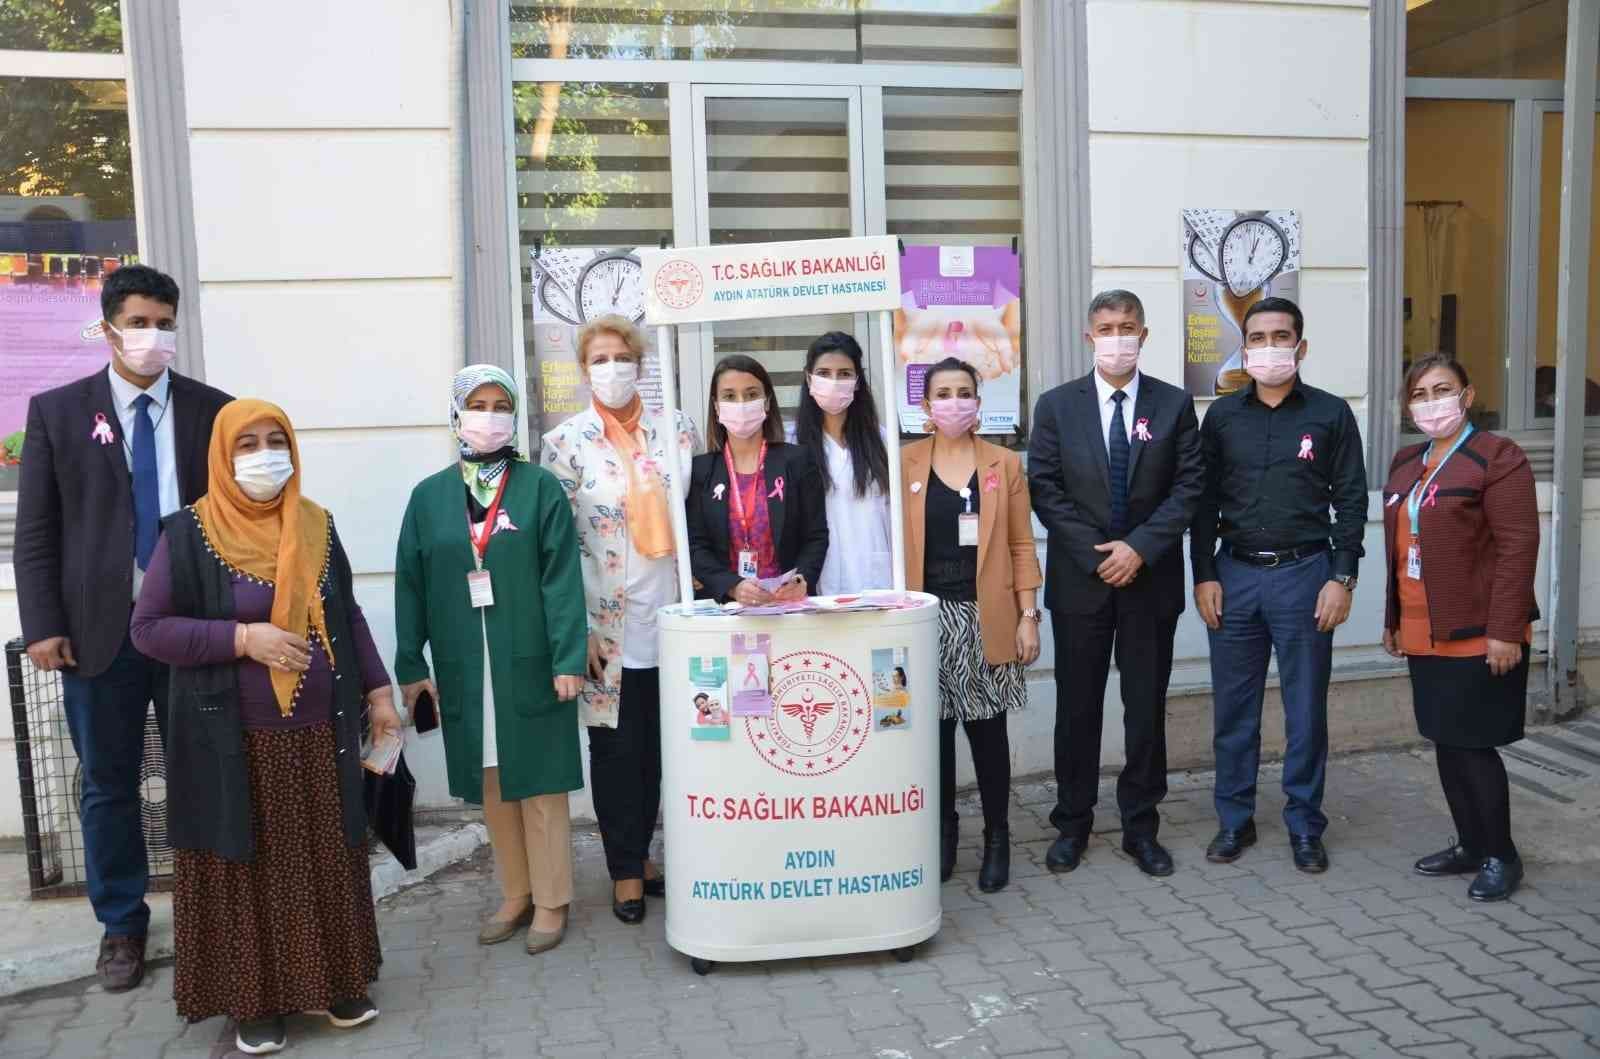 Aydın Atatürk Devlet Hastanesi’nde meme kanserine dikkat çekildi #aydin